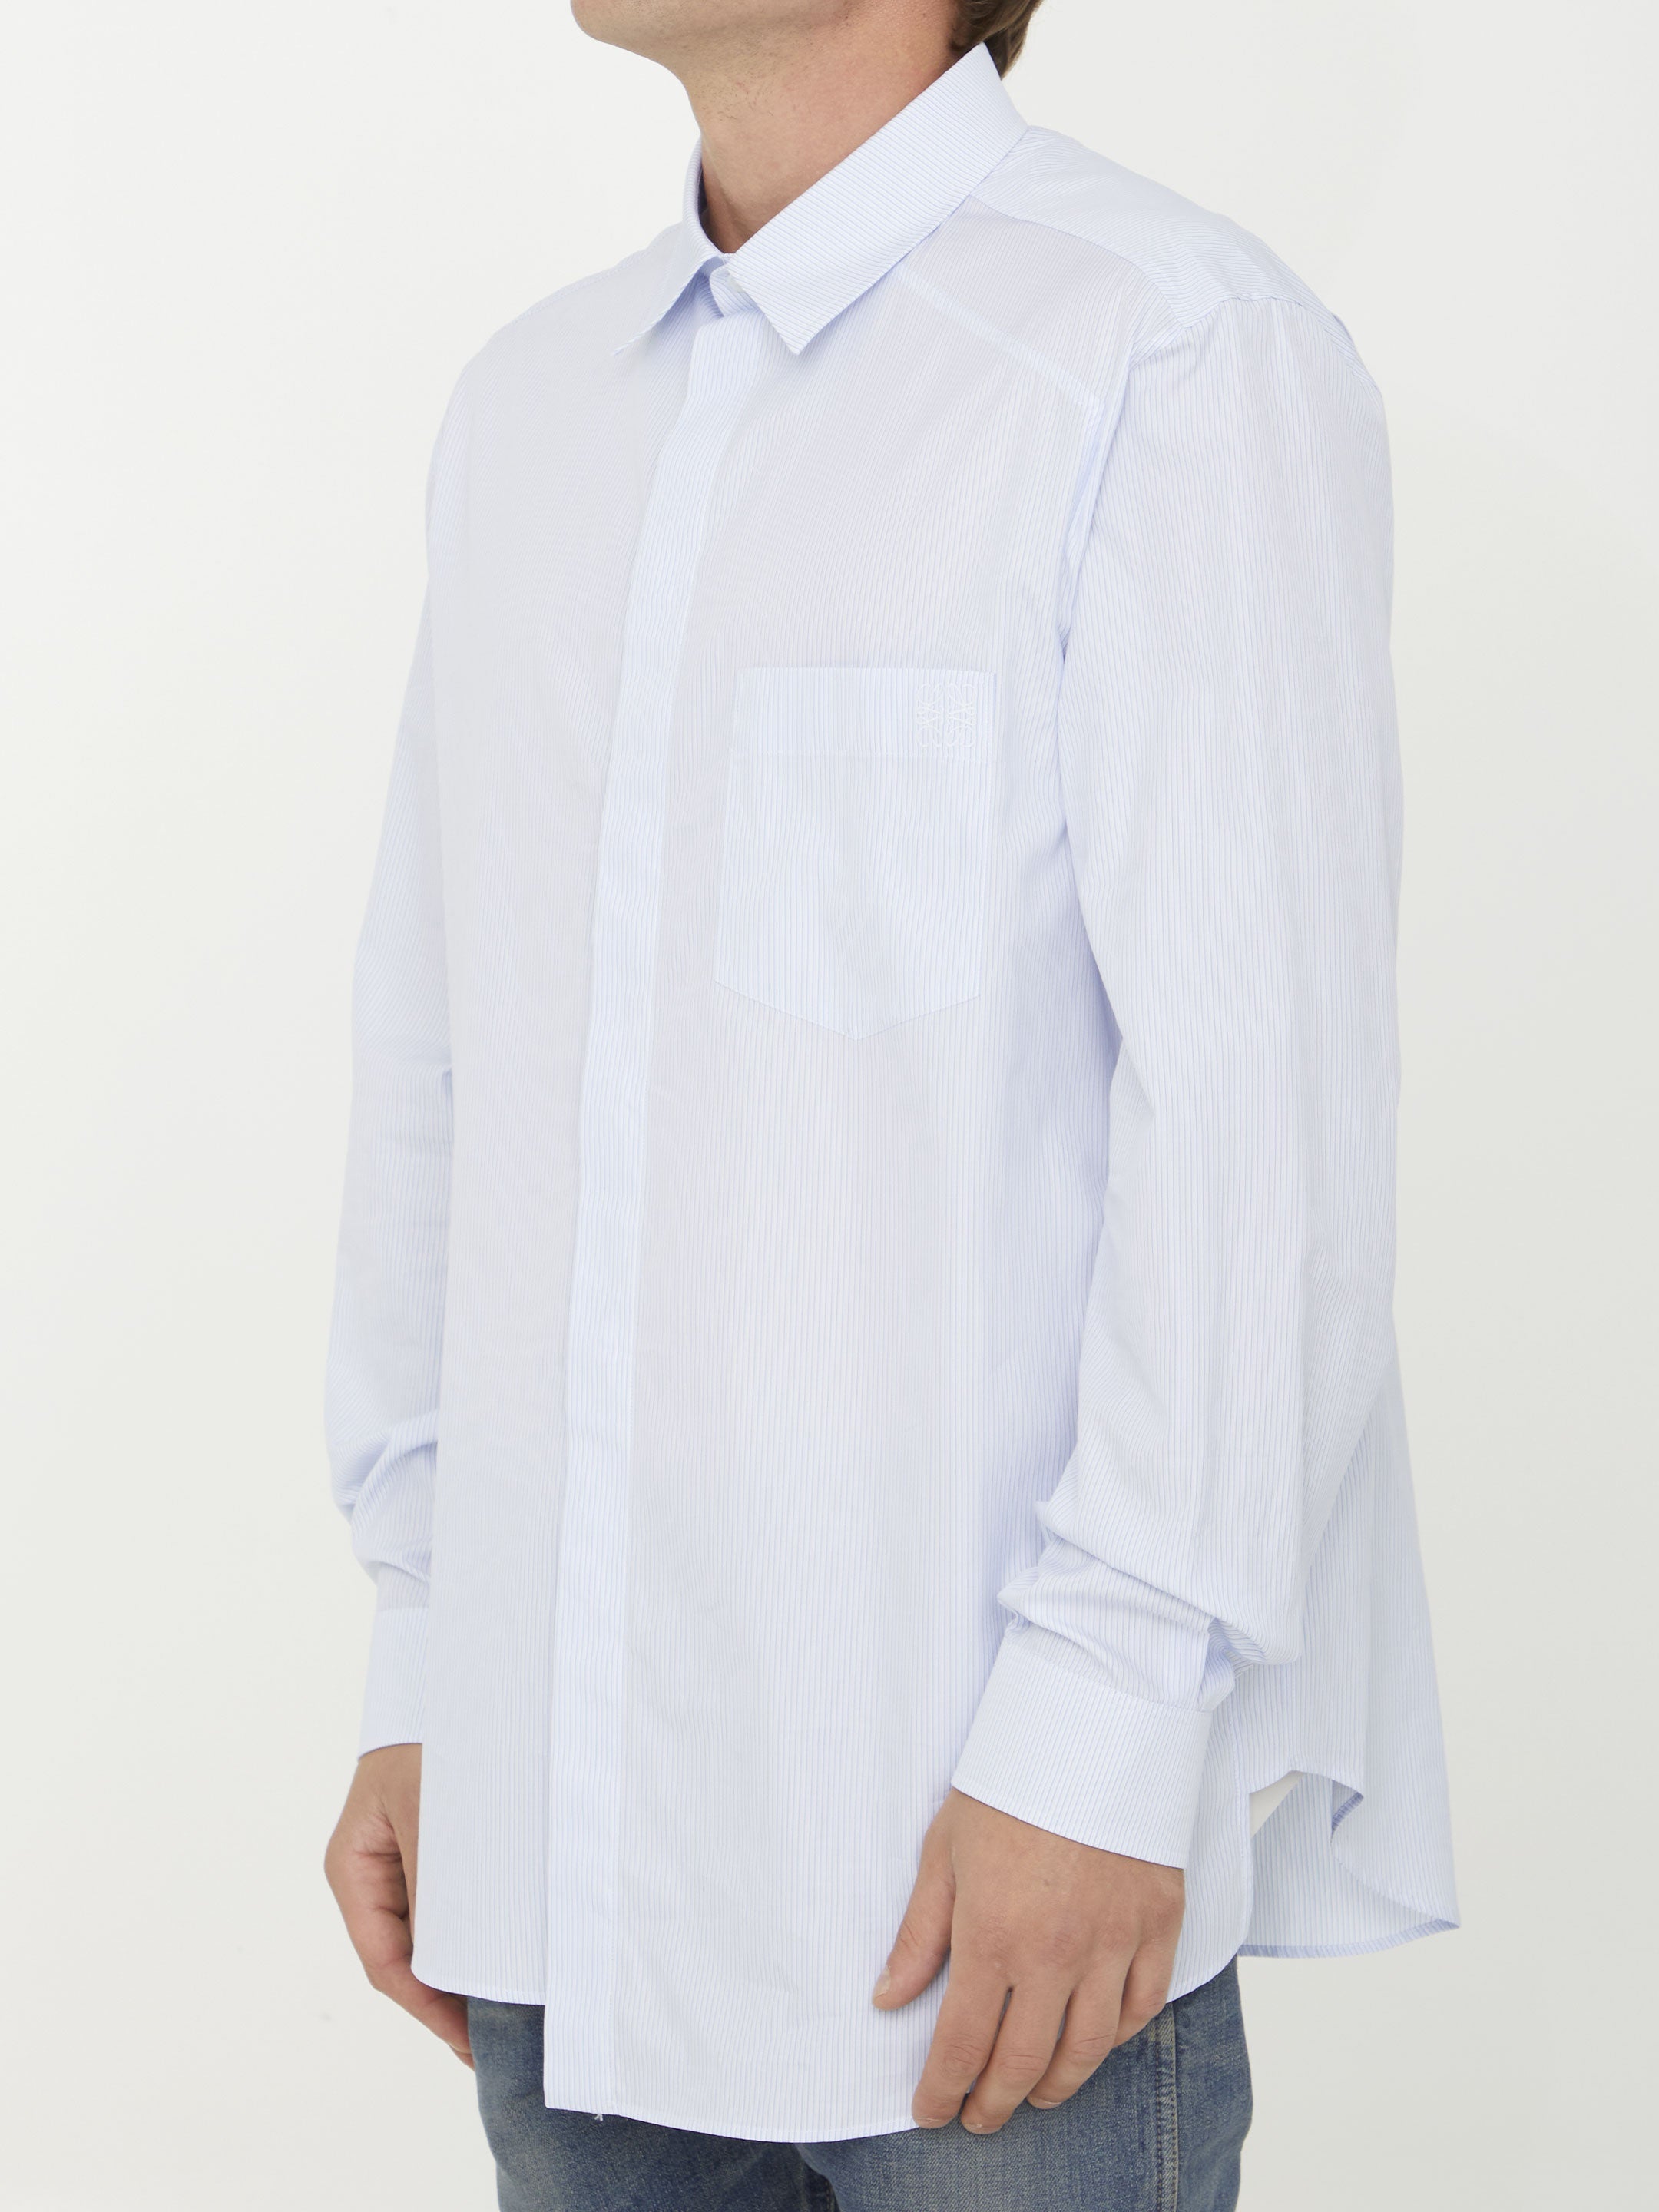 Asymmetric cotton shirt